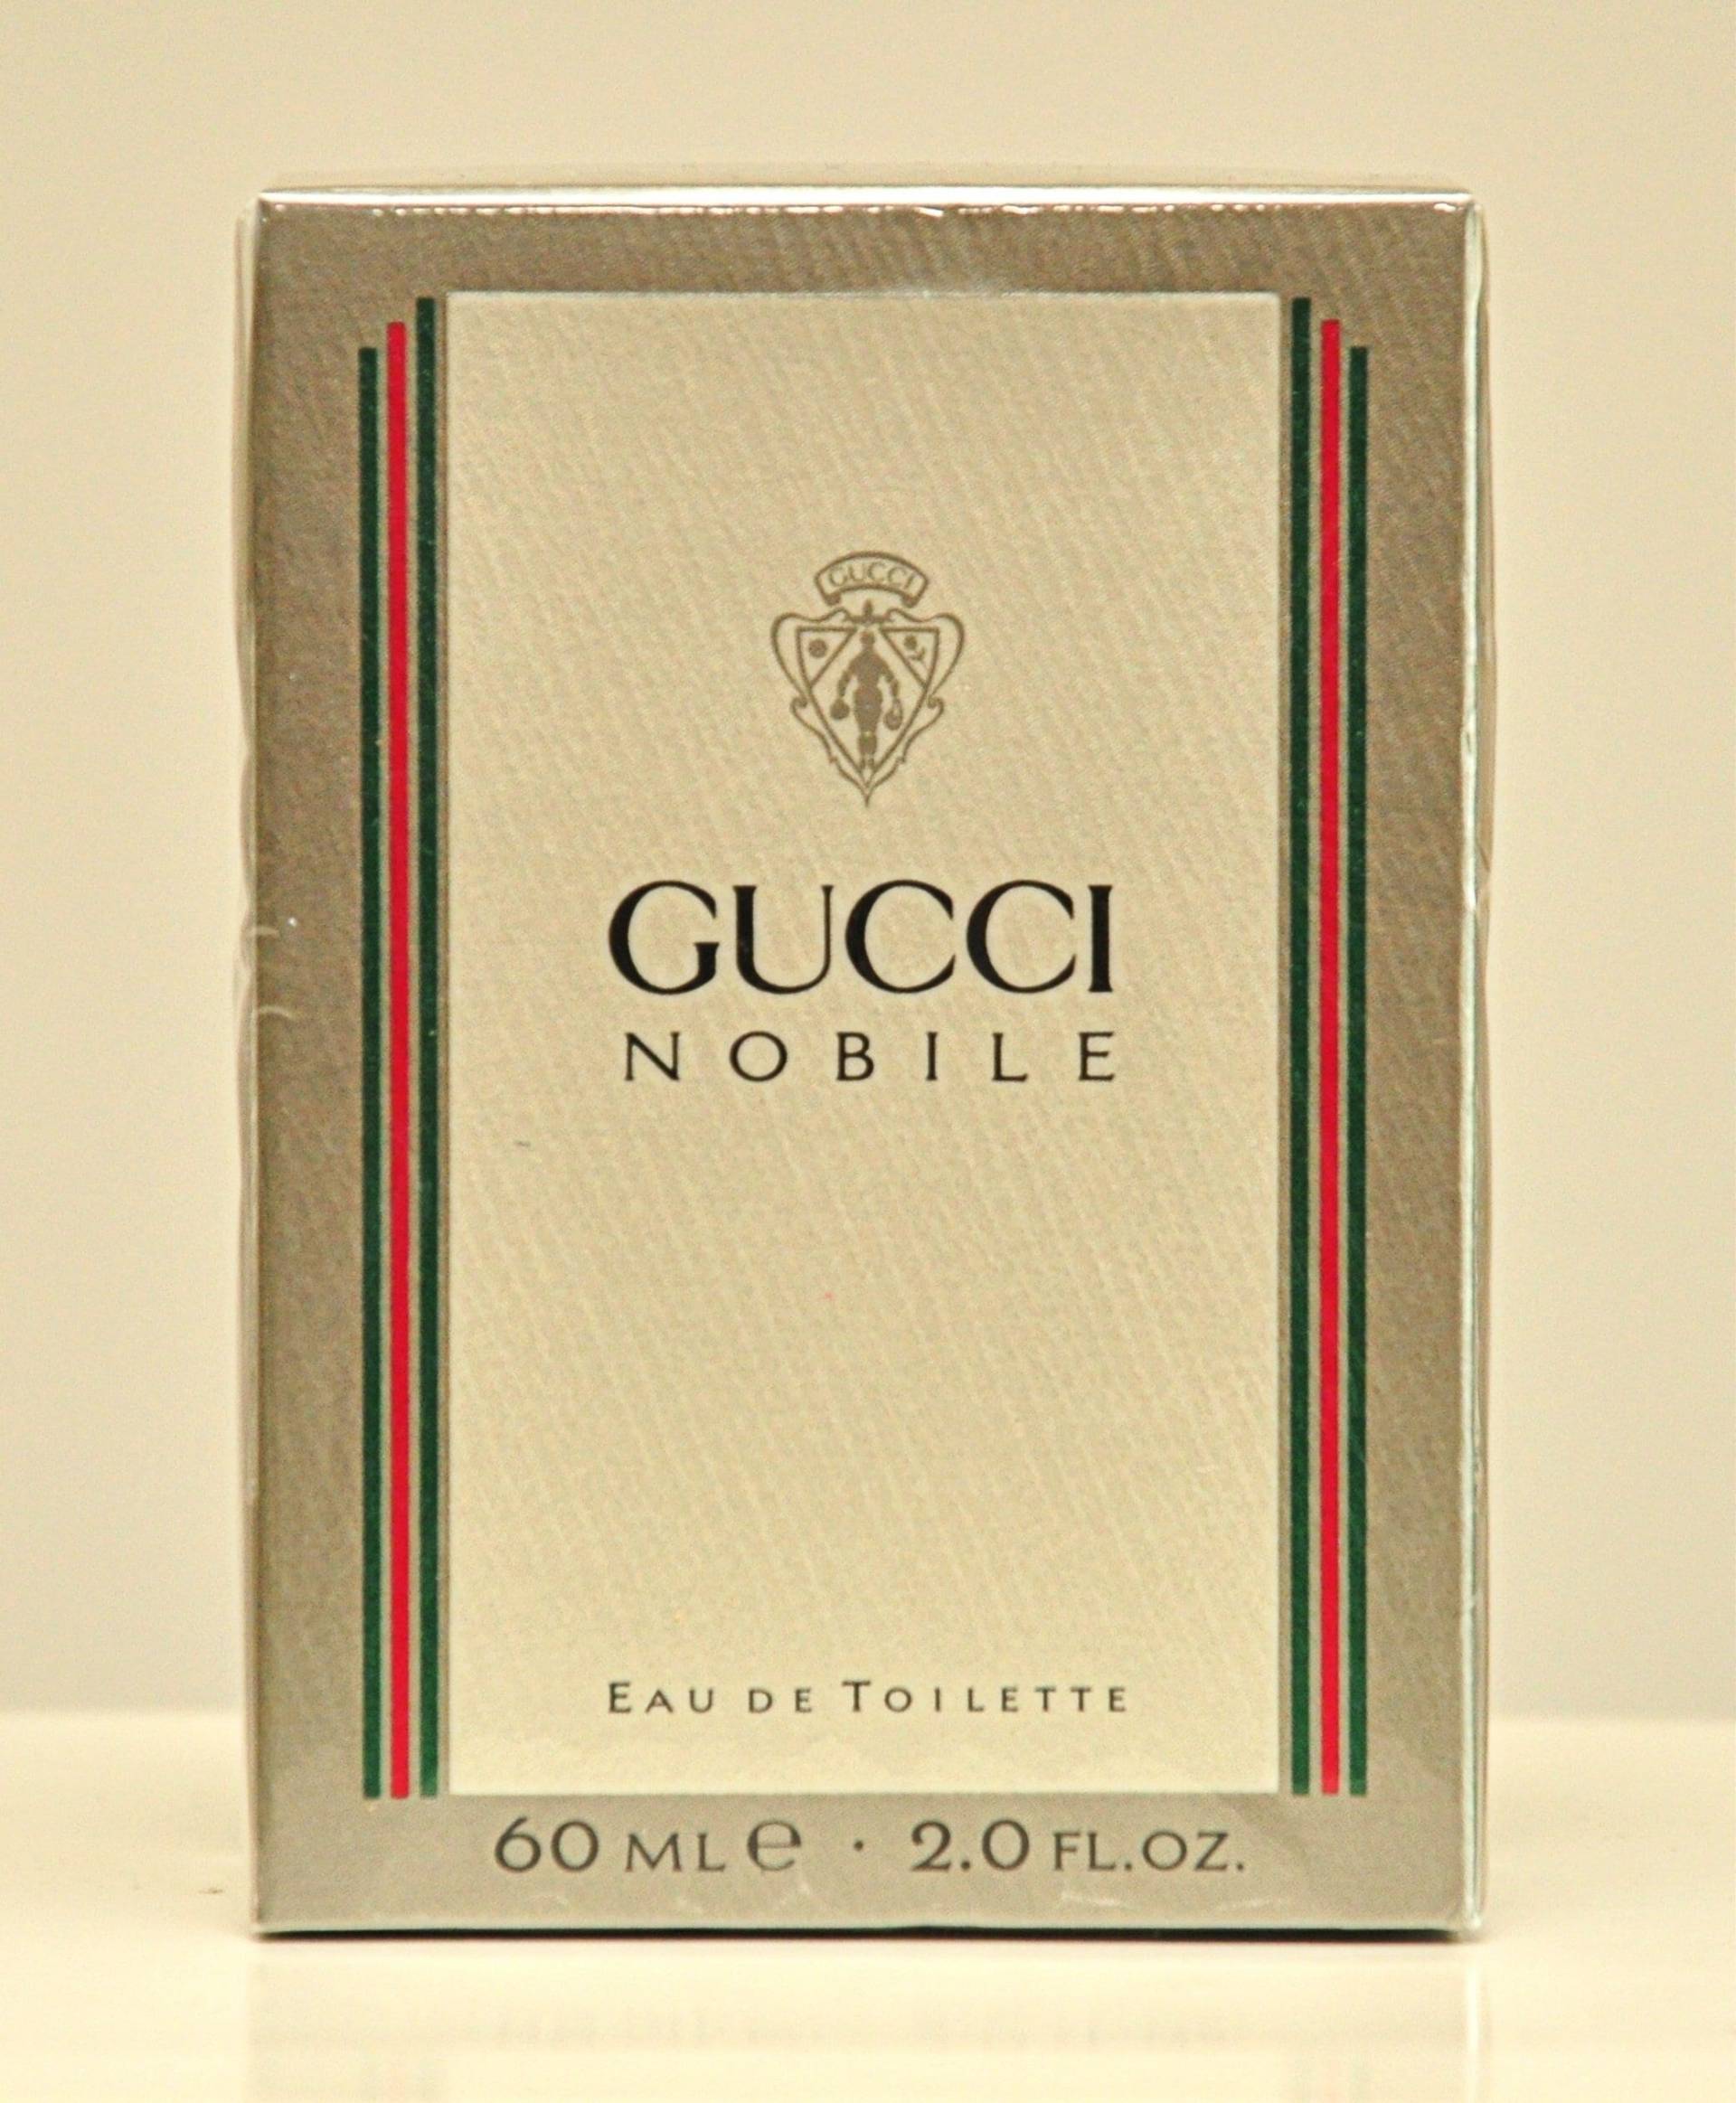 Gucci Nobile Eau De Toilette Edt 60Ml Splash Non Spray Parfüm Mann Sehr Selten Vintage 1988 Neu Versiegelt von Etsy - YourVintagePerfume